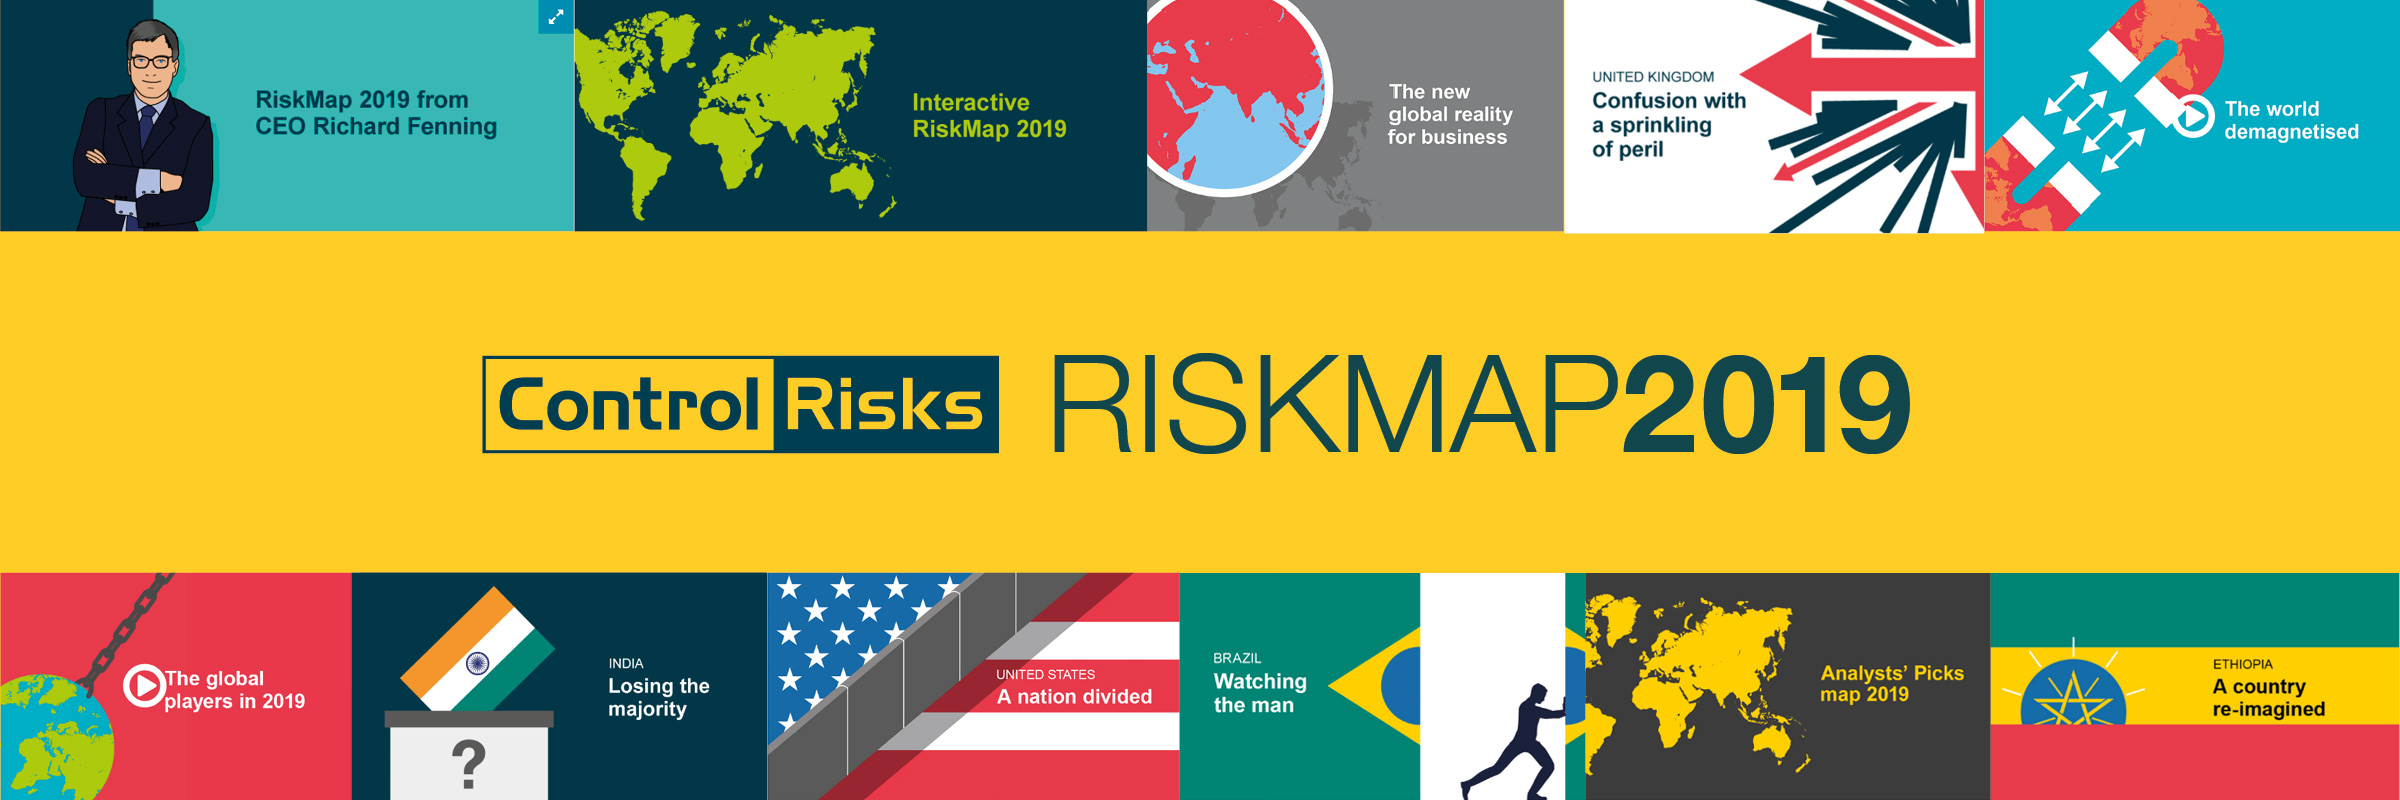 Control Risks RISKMAP